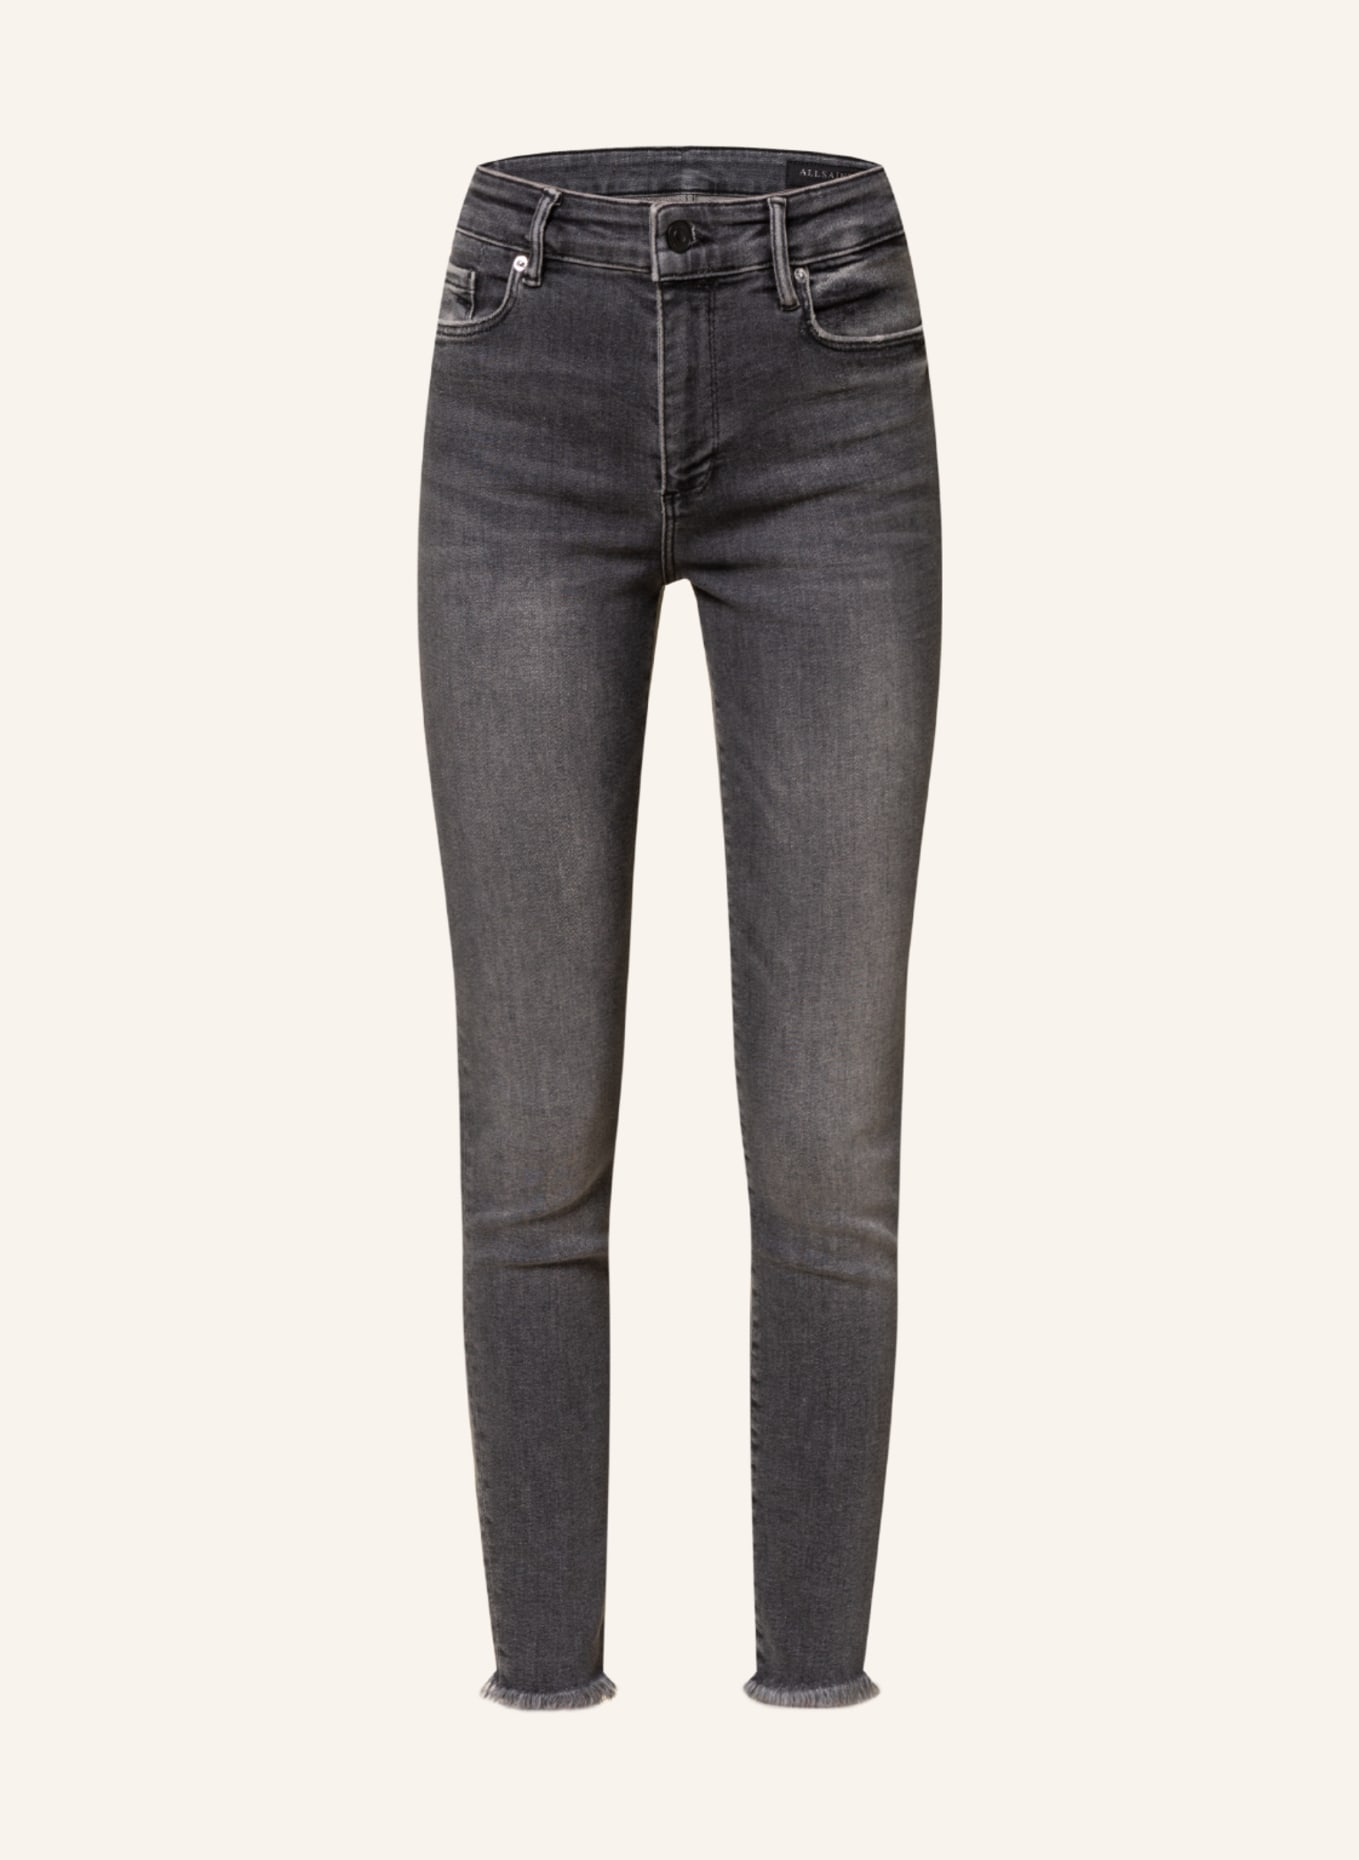 ALLSAINTS Skinny jeans MILLER, Color: 162 Washed Black (Image 1)